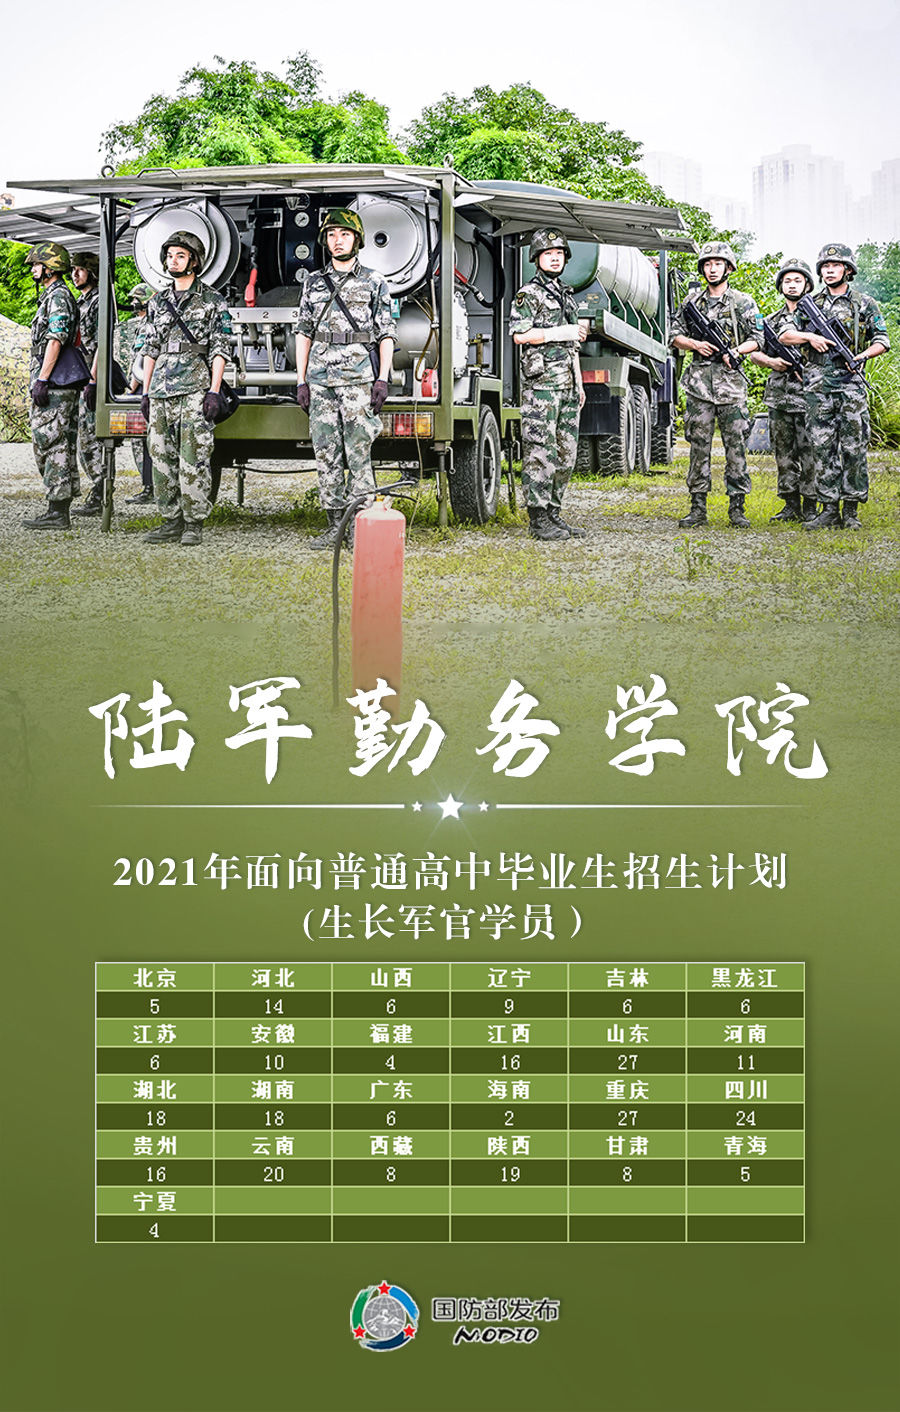 毕业生|海报丨今年27所军队院校计划招收普通高中毕业生1.3万余人